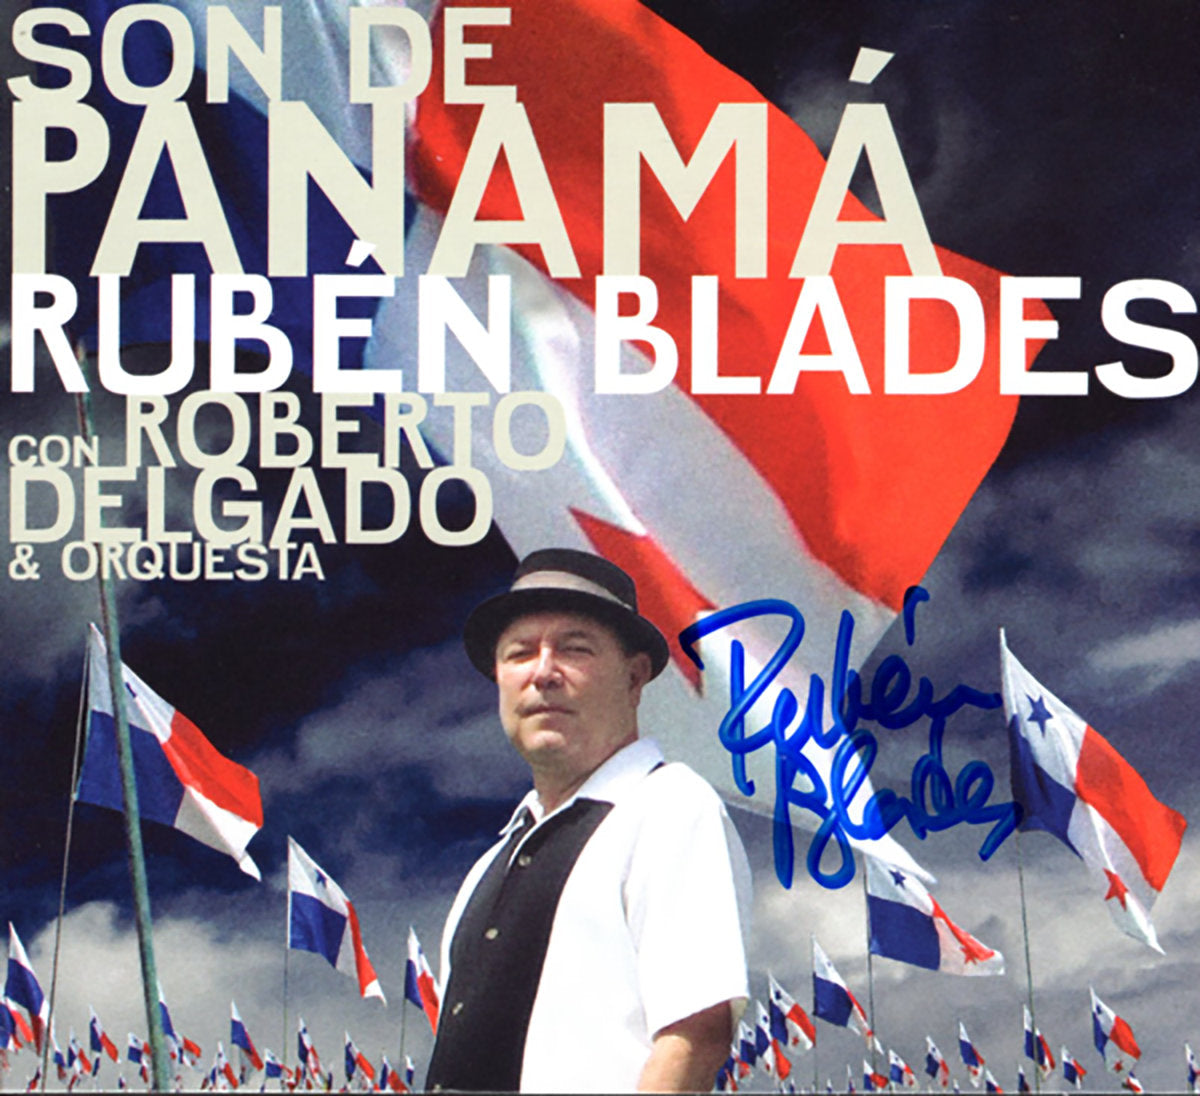 Rubén Blades with Roberto Delgado & Orquesta - "Son de Panamá" | CD, Autographed CD, Digital Download